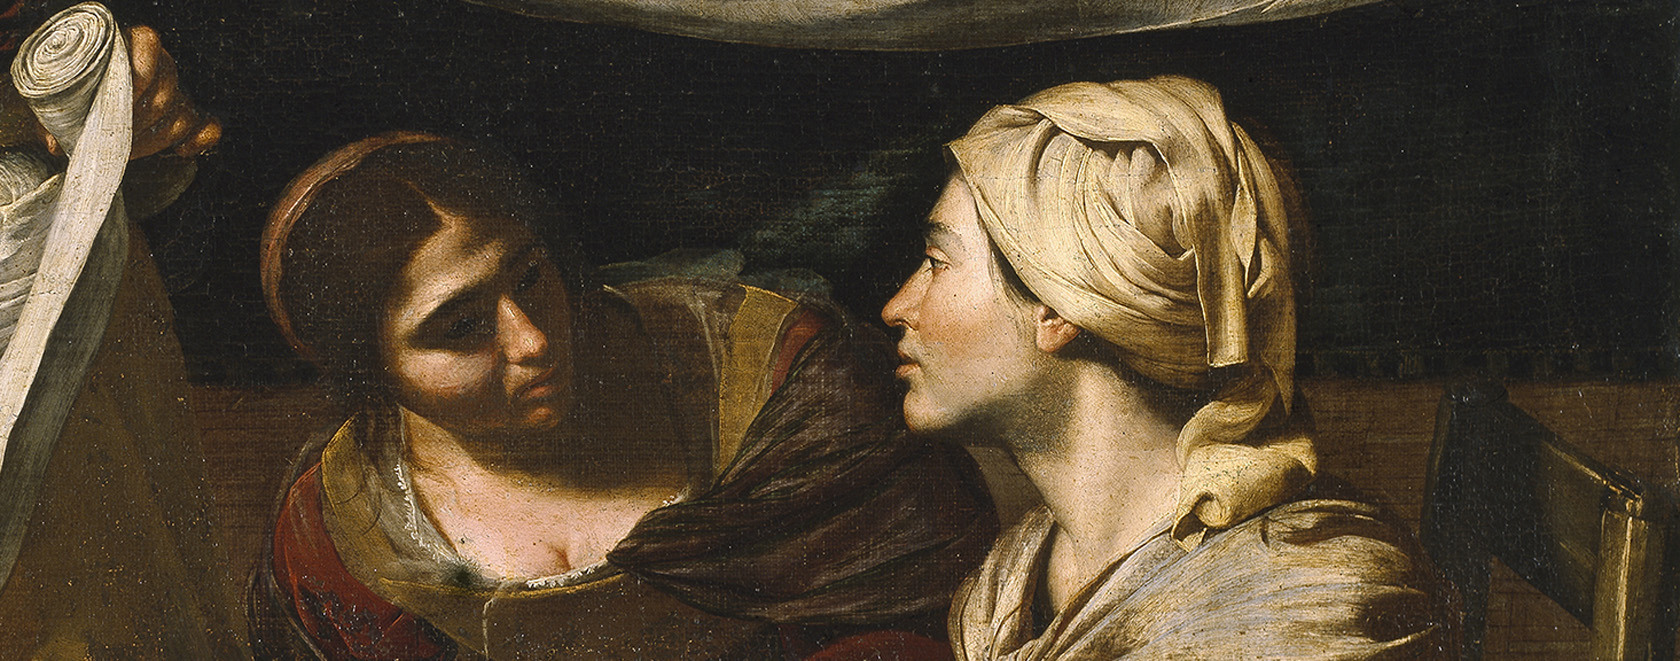 Francesco Guarino, La Naissance de la Vierge, huile sur toile, 170 x 120 cm, Naples, Collection privée (détail). Photo ©DR